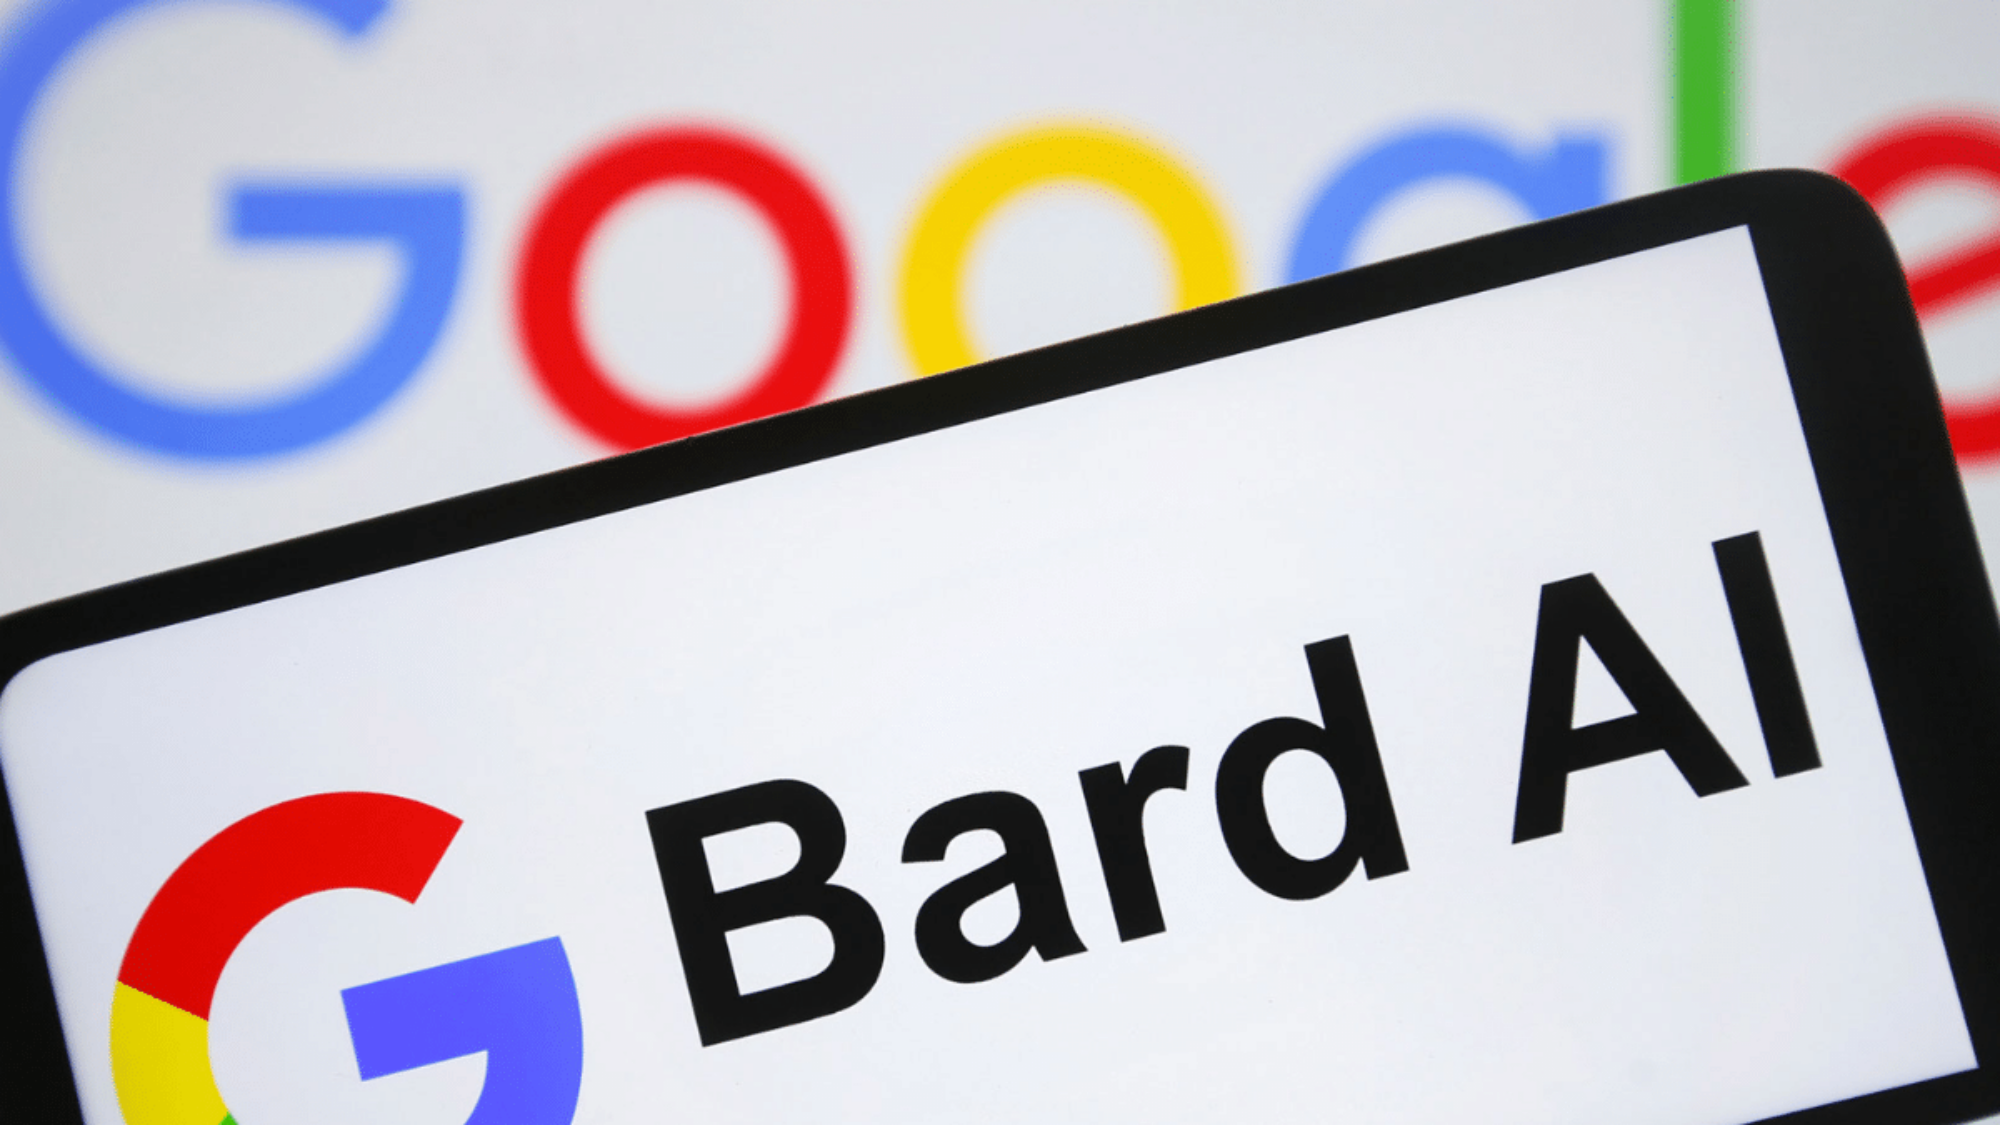 google Bard